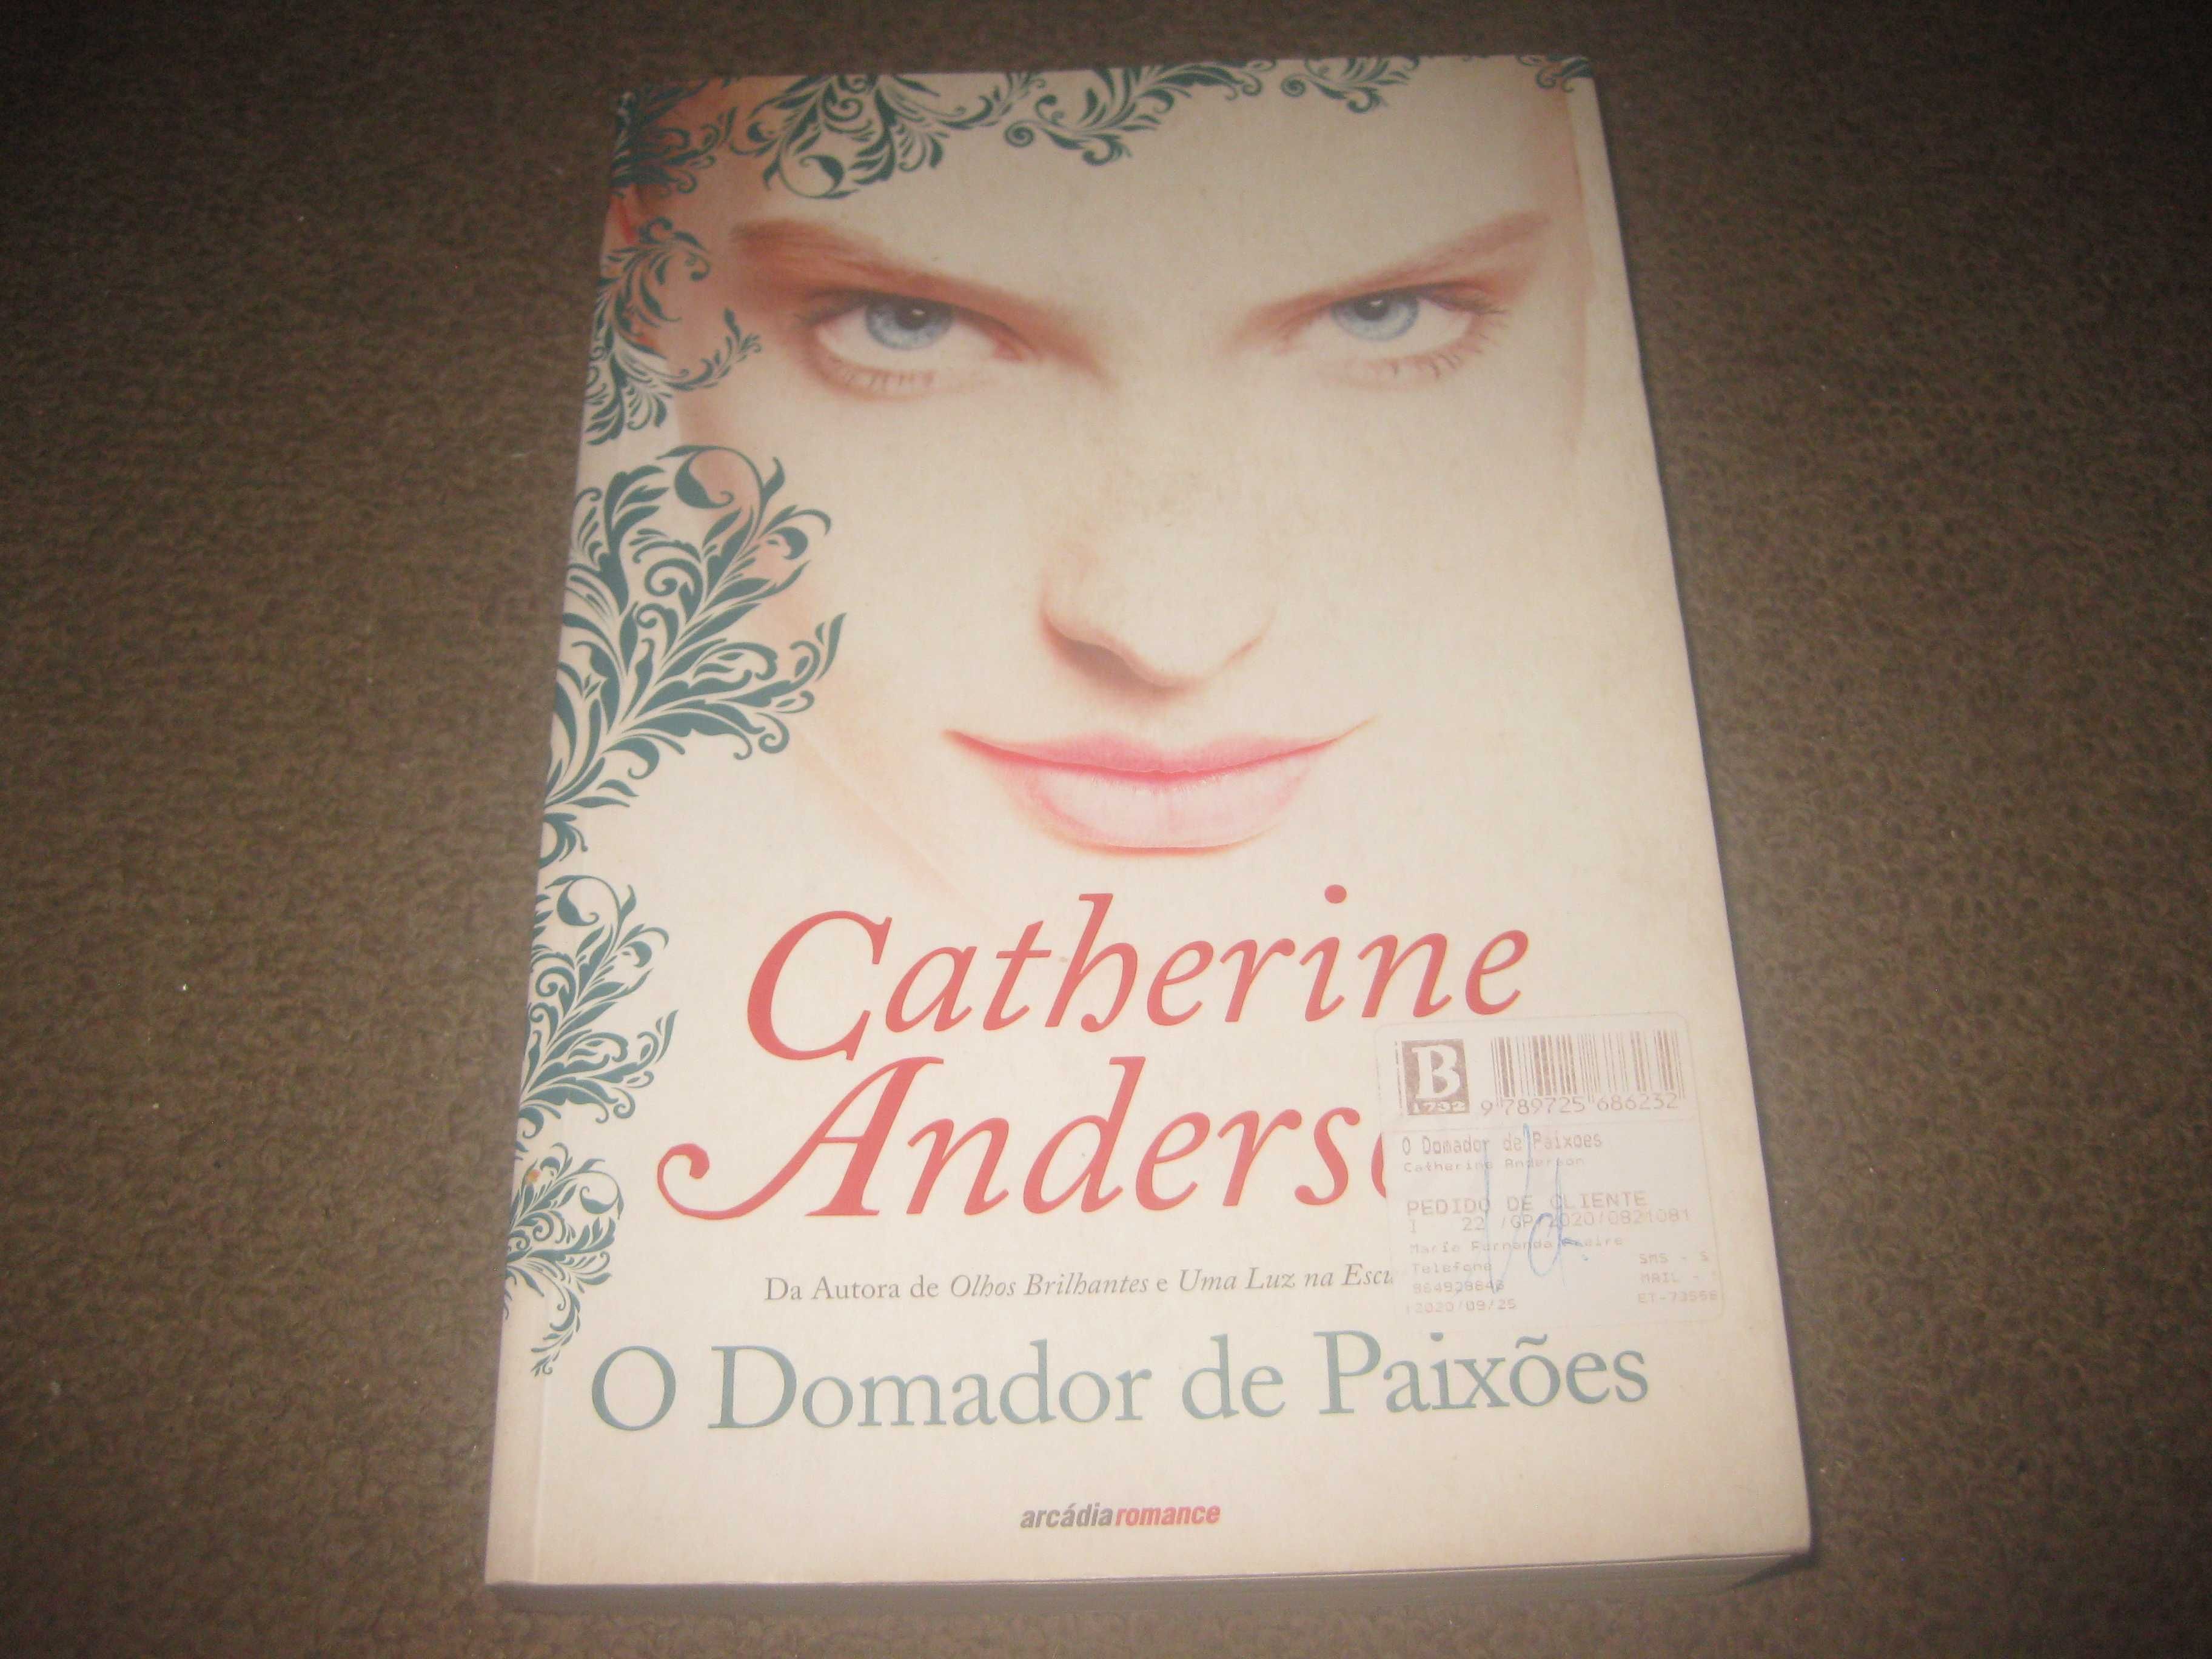 Livro "O Domador de Paixões" de Catherine Anderson